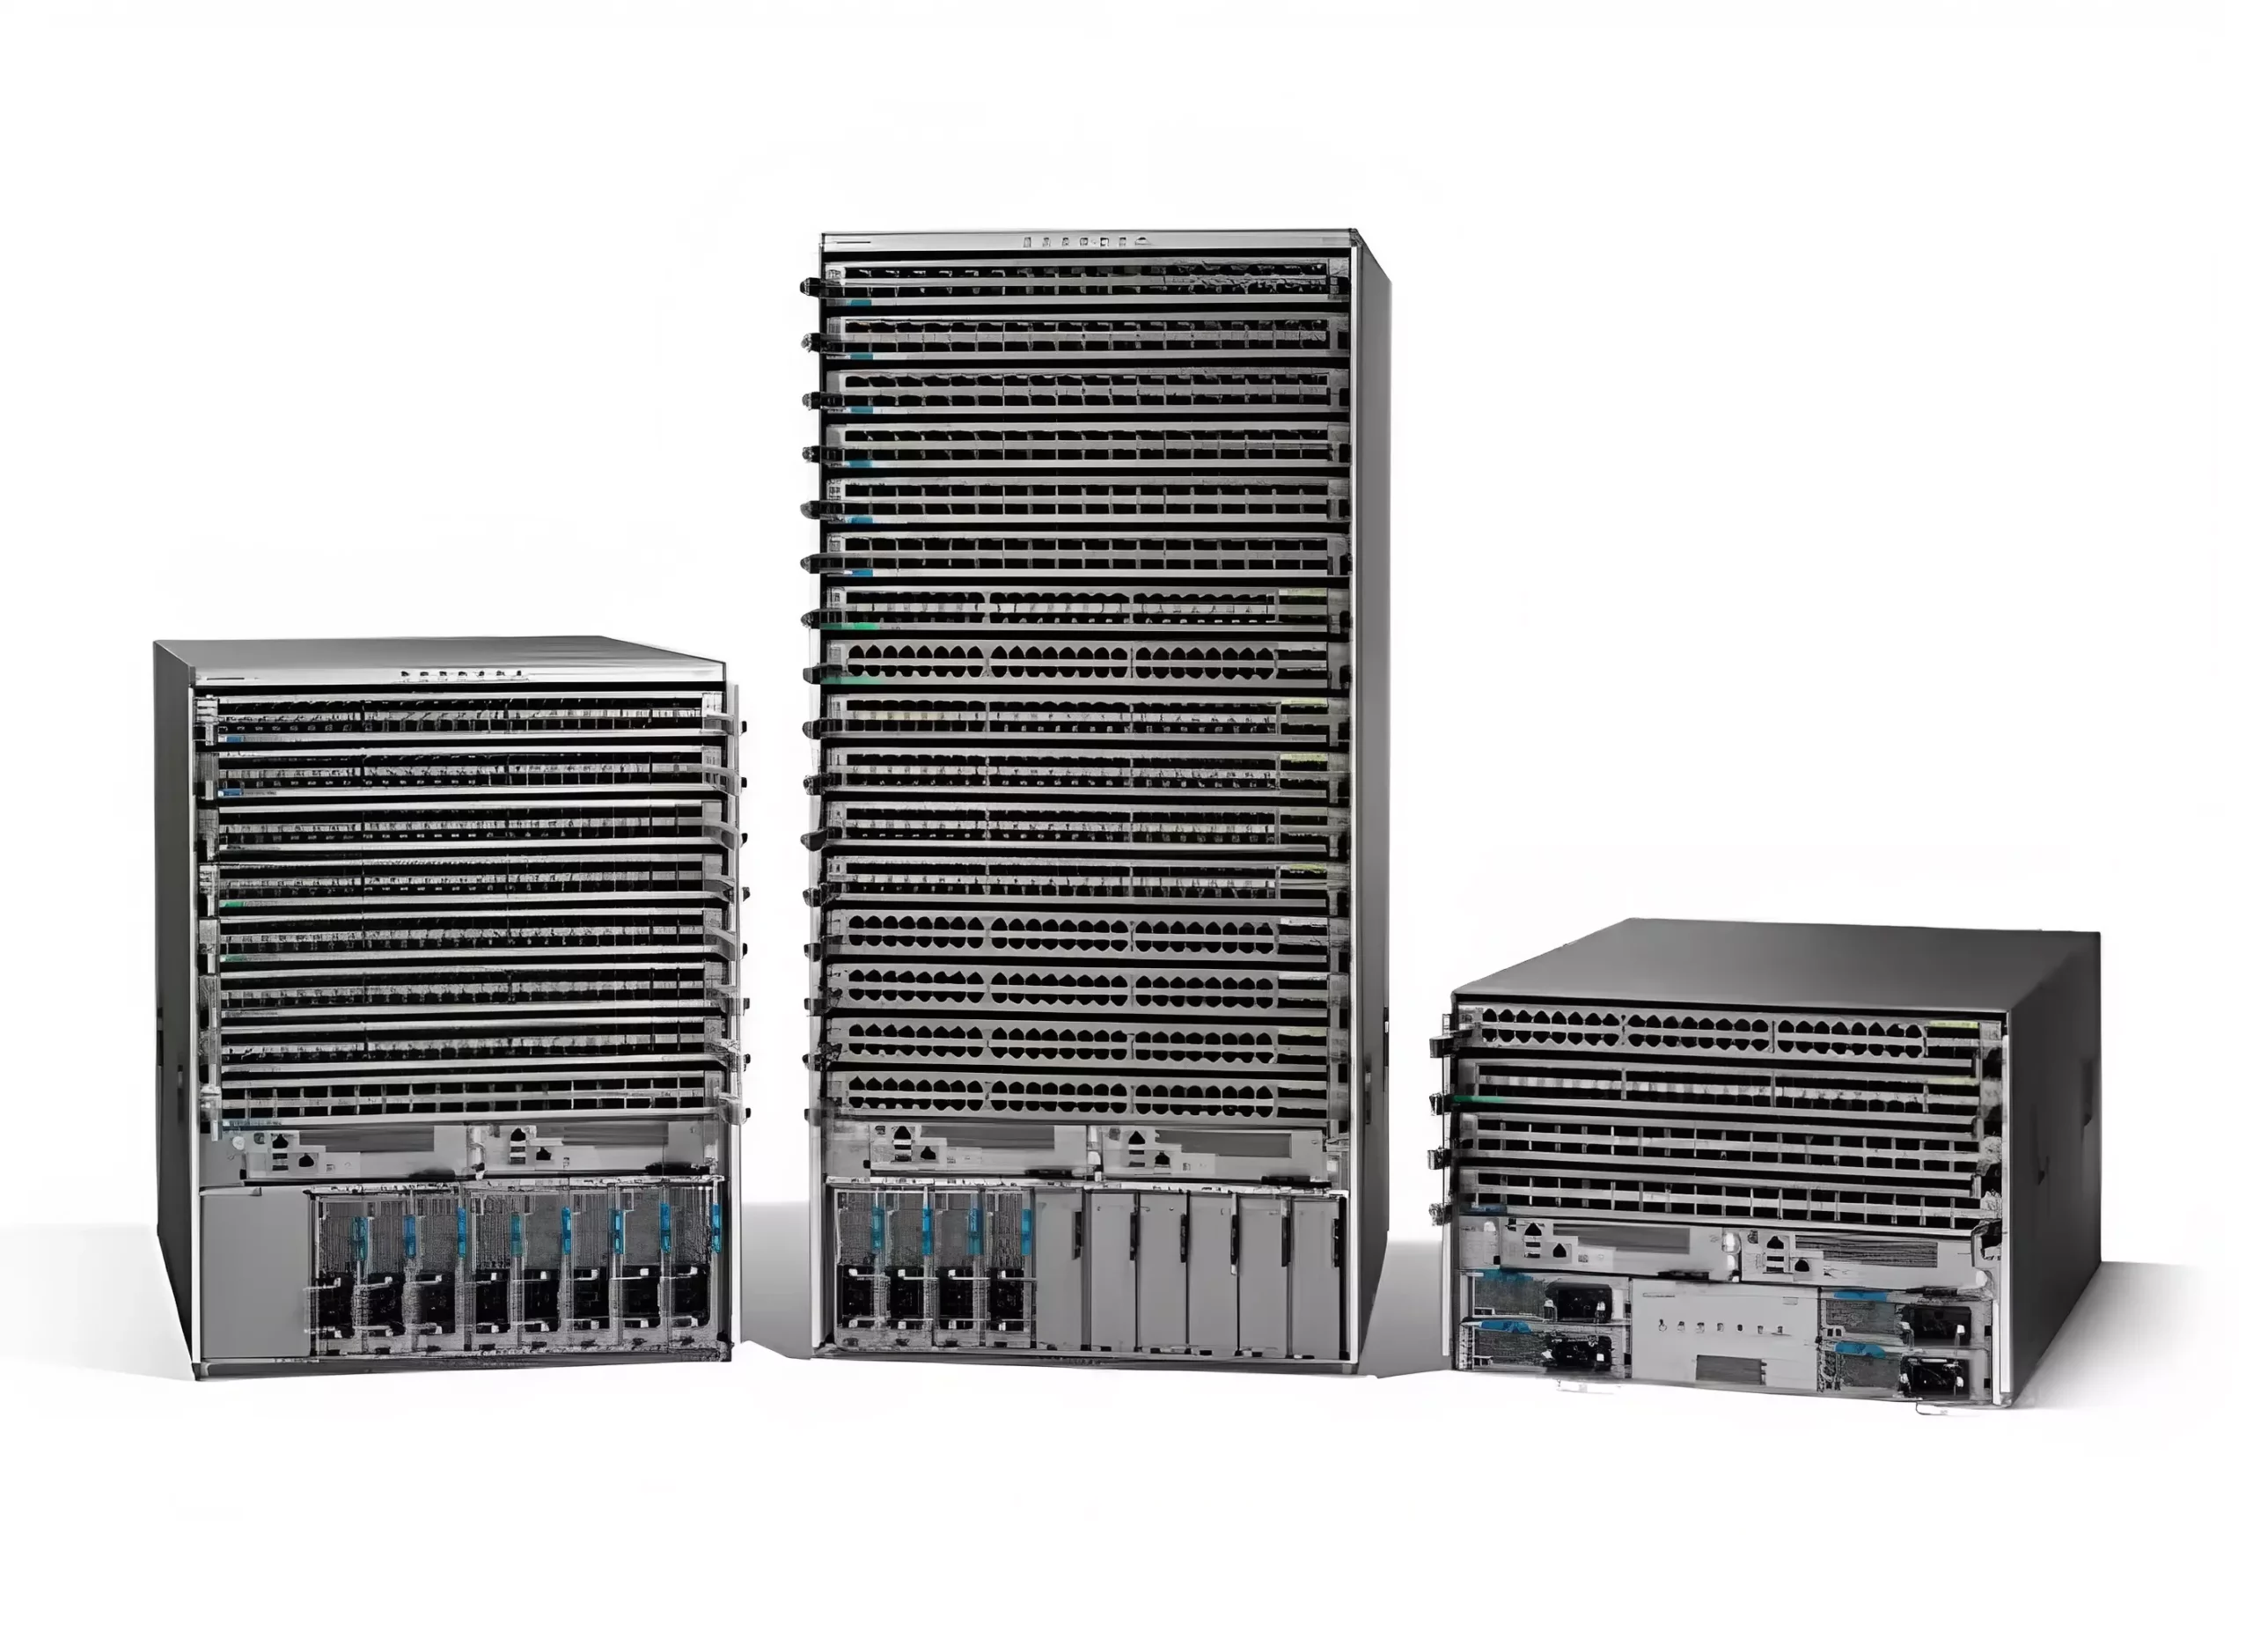 Cisco-Switches-9000-Series